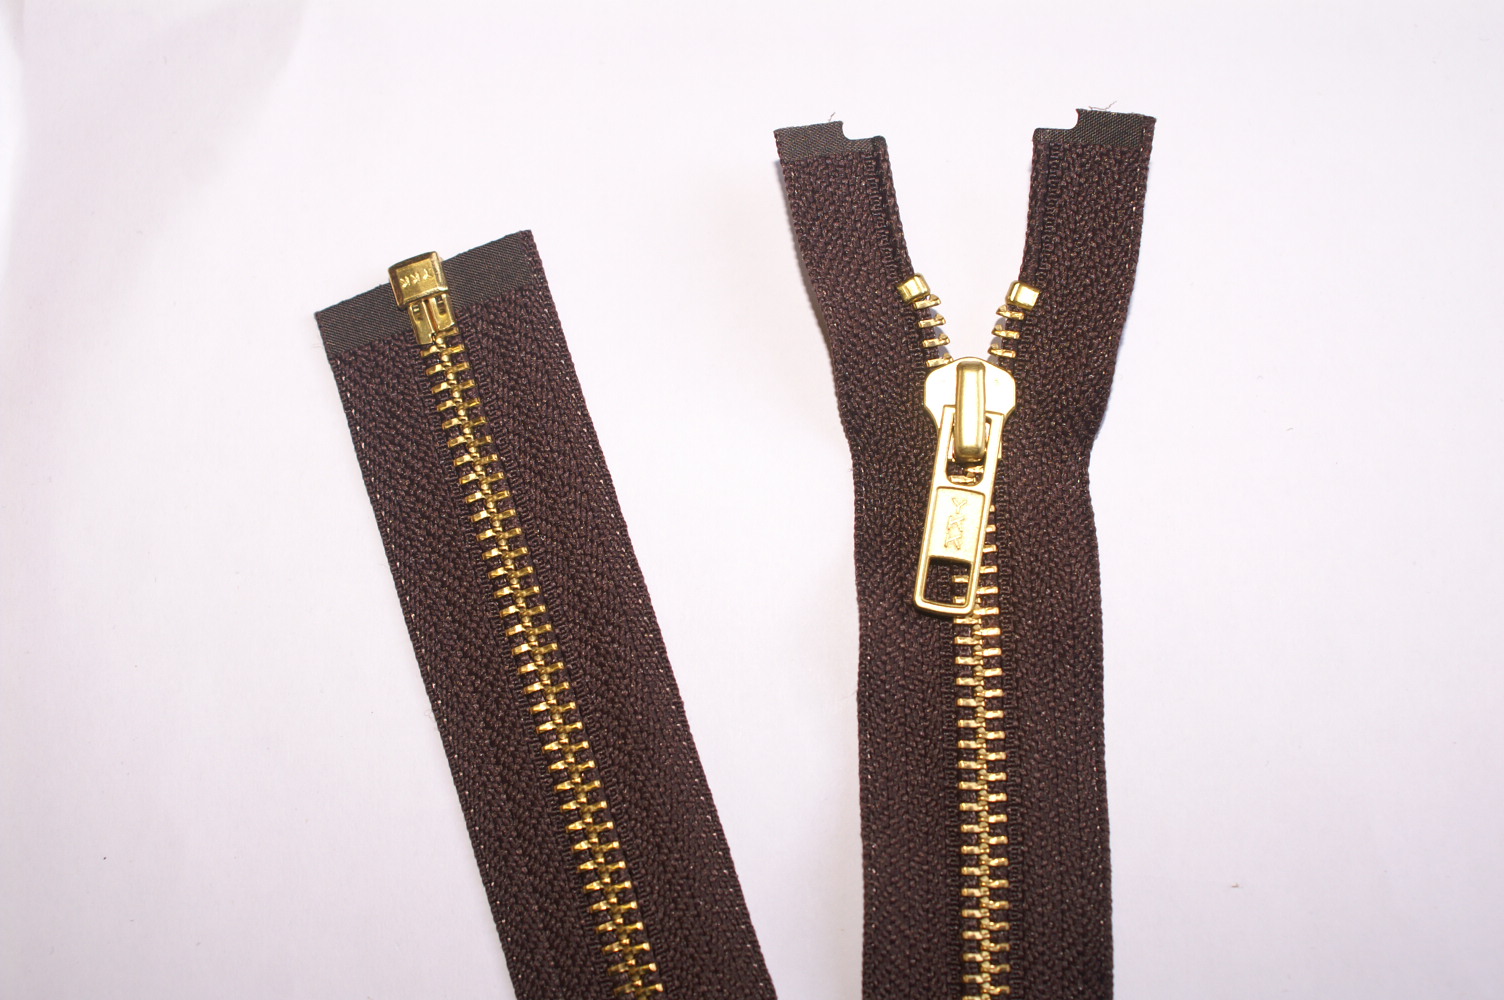 61cms/24" Open-Ended Golden Brass Zip